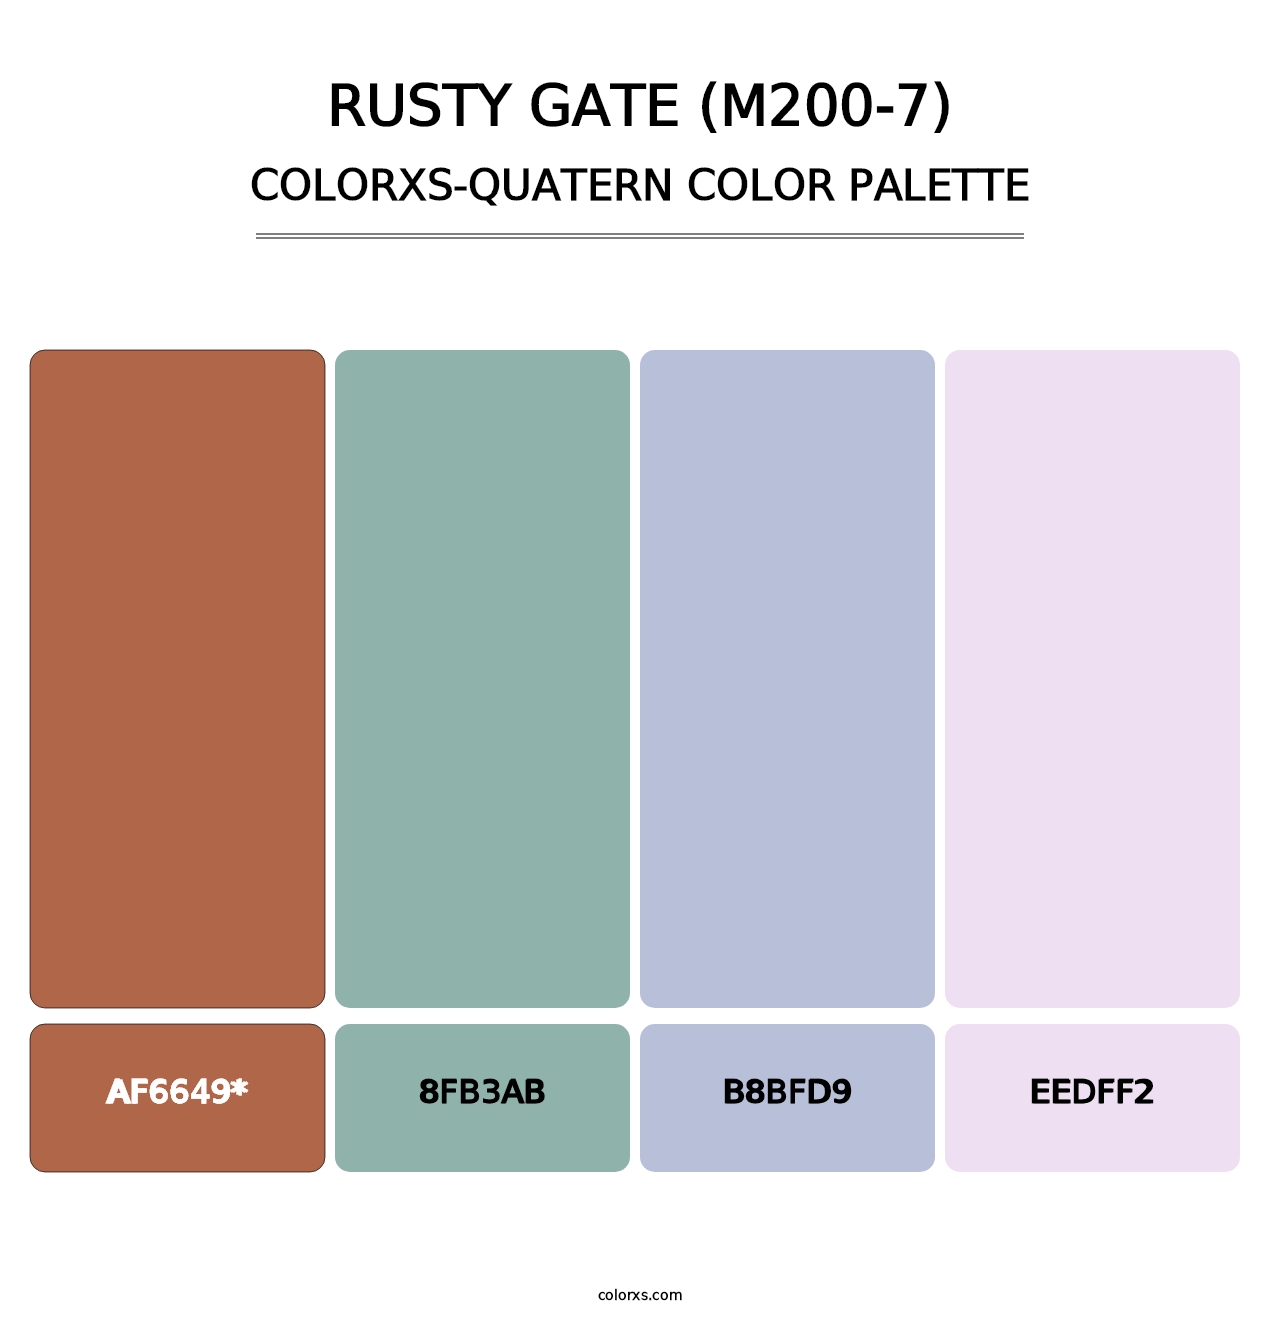 Rusty Gate (M200-7) - Colorxs Quatern Palette